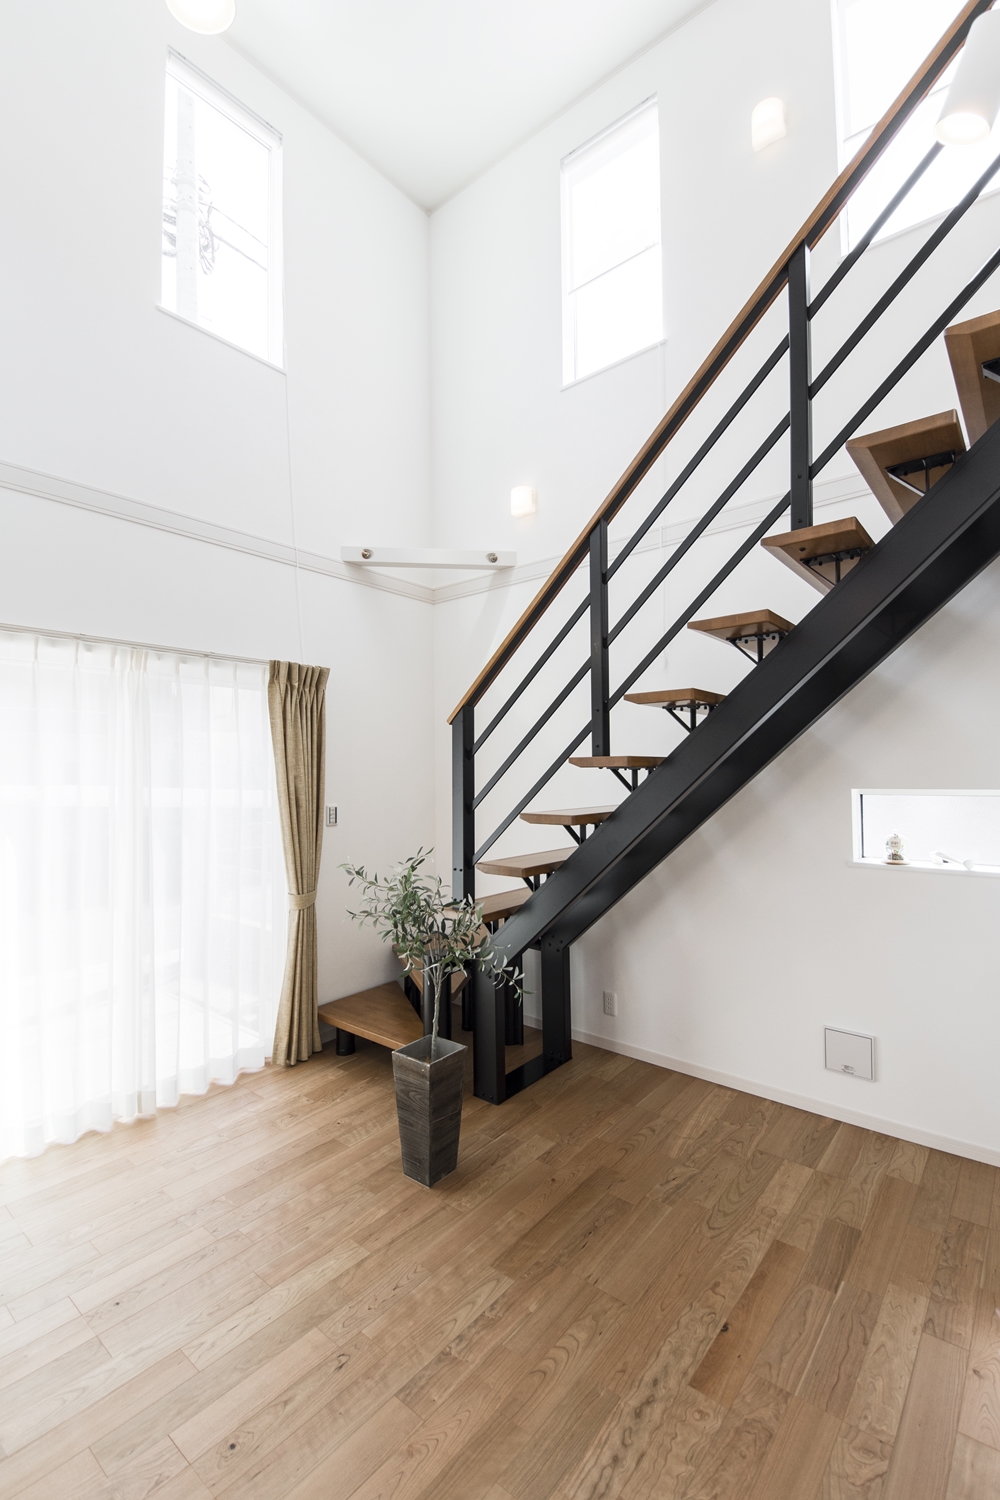 光や風を遮らず階下と階上を軽やかにつなぎ、快適な空間を演出するオープンスタイルの階段。